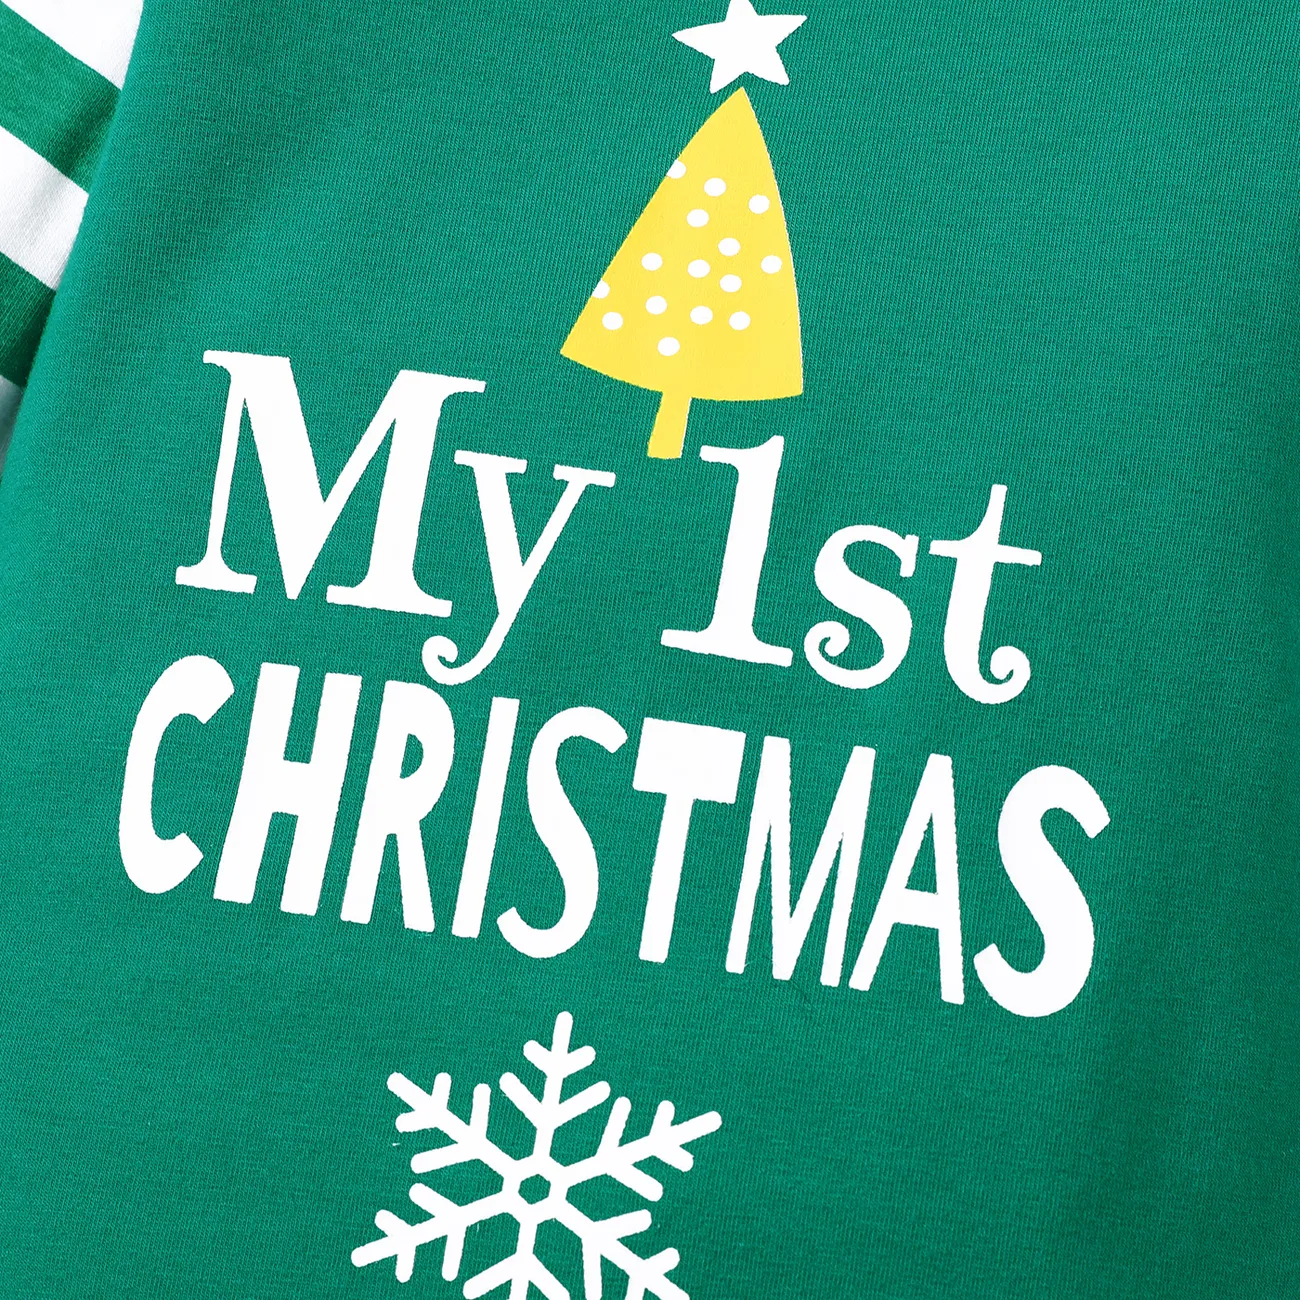 عيد الميلاد 2 قطعة طفل رضيع / فتاة 95٪ قطن مخطط طويل الأكمام طباعة بذلة مع مجموعة قبعة أخضر big image 1